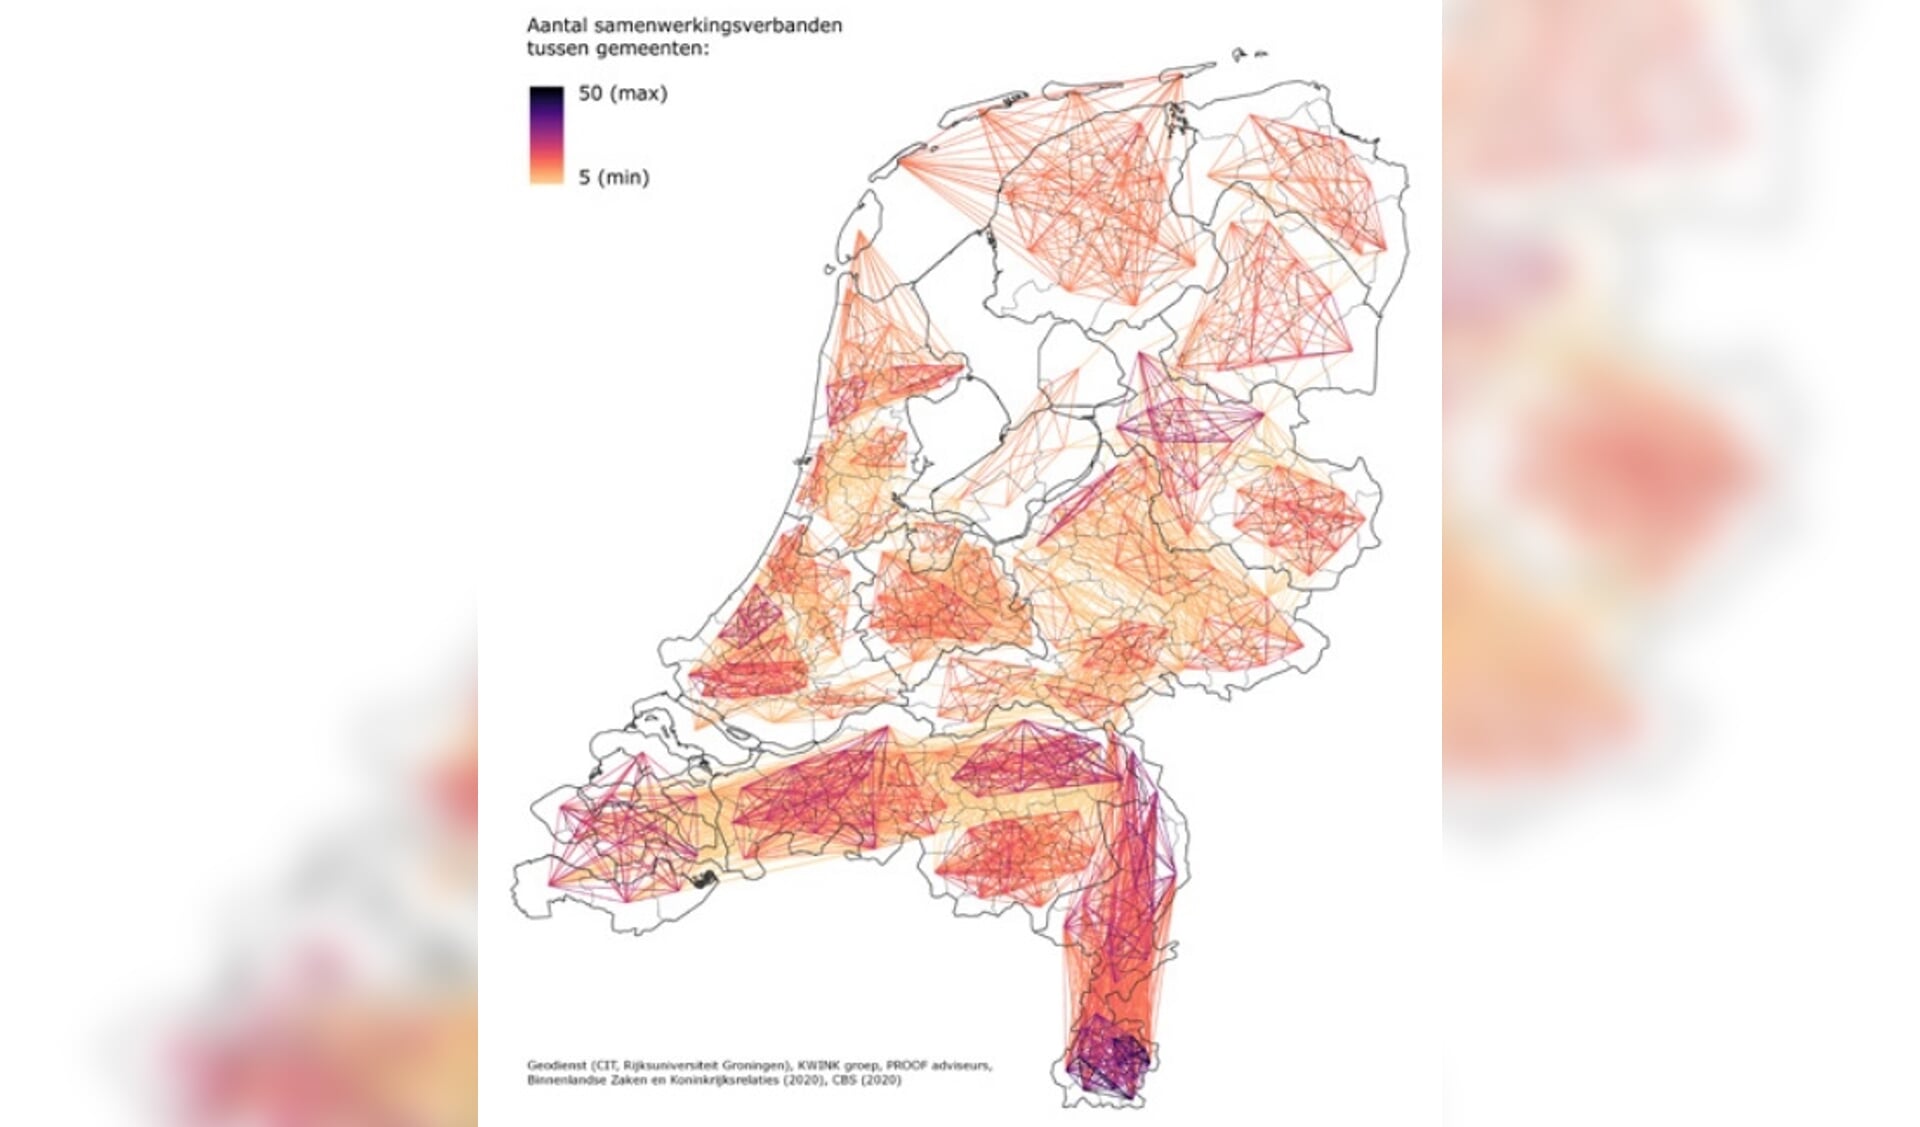 De mate van gemeentelijke samenwerking in Nederland in kaart gebracht.